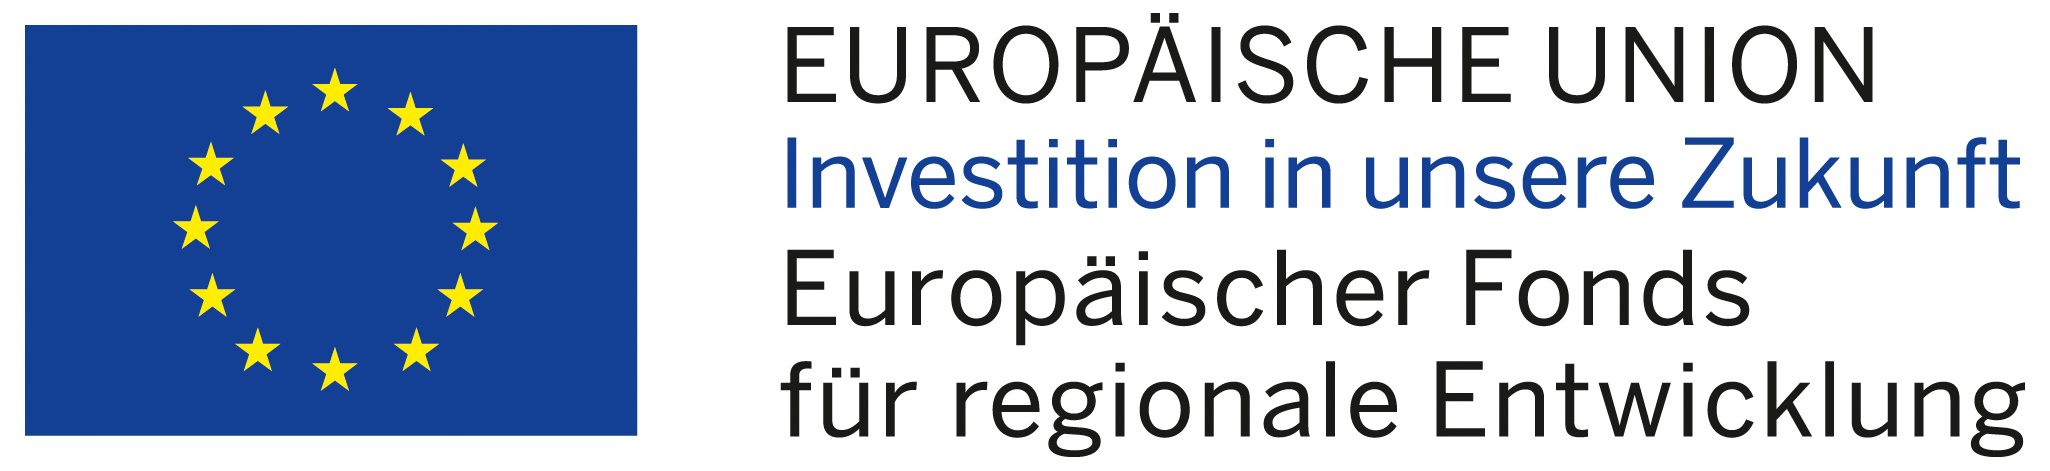 Europäische Union - Investition in unsere Zukunft - Europäischer Fonds für regionale Entwicklung